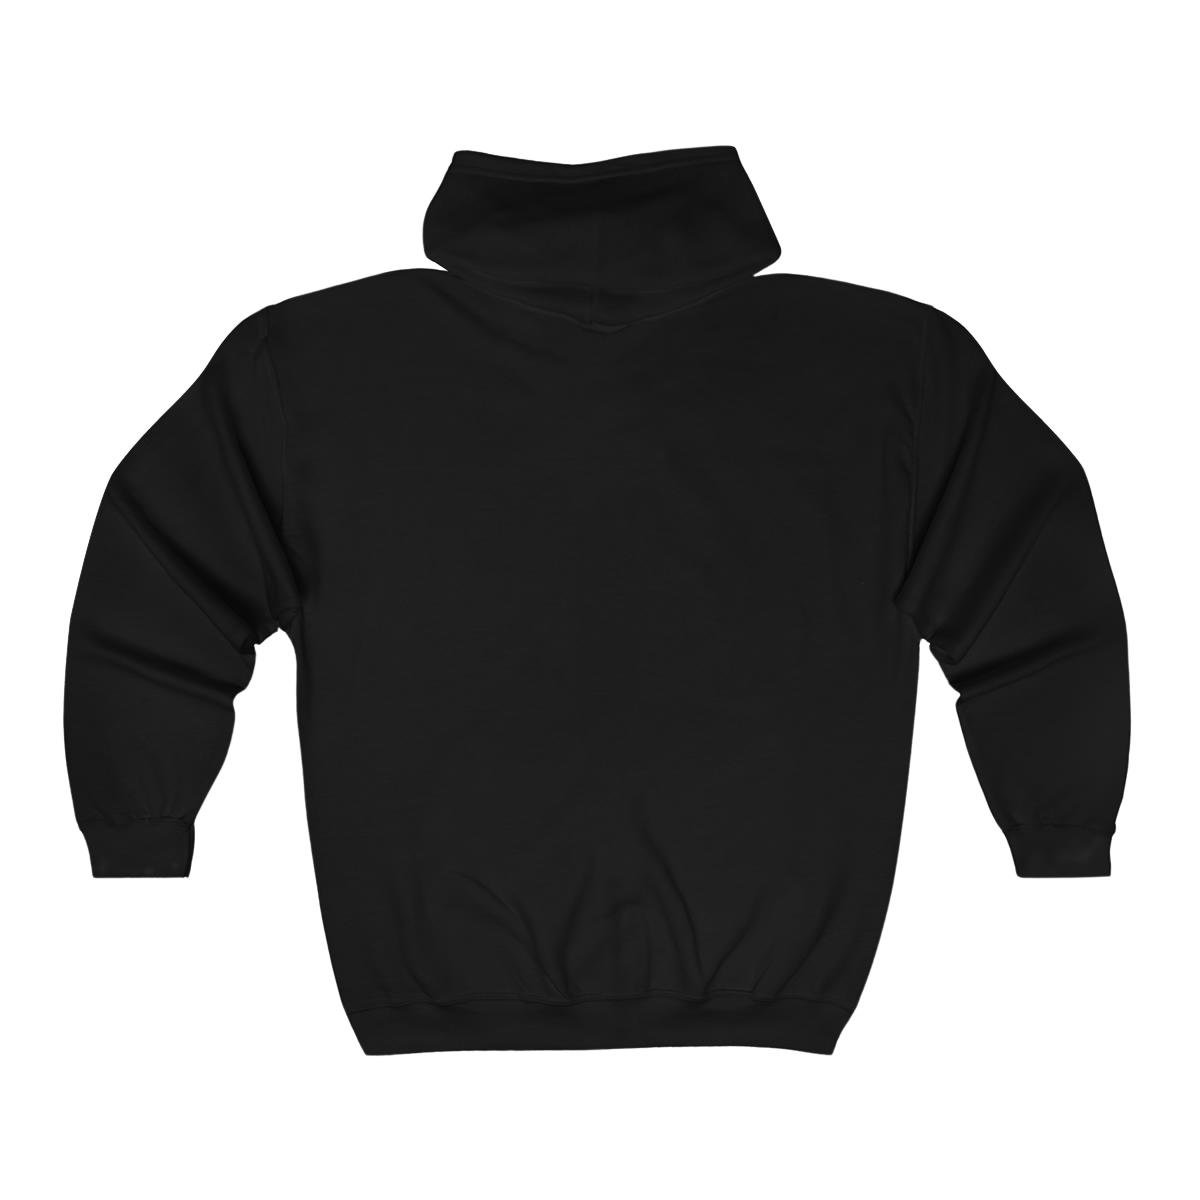 Take – Space Force Full Zip Hooded Sweatshirt